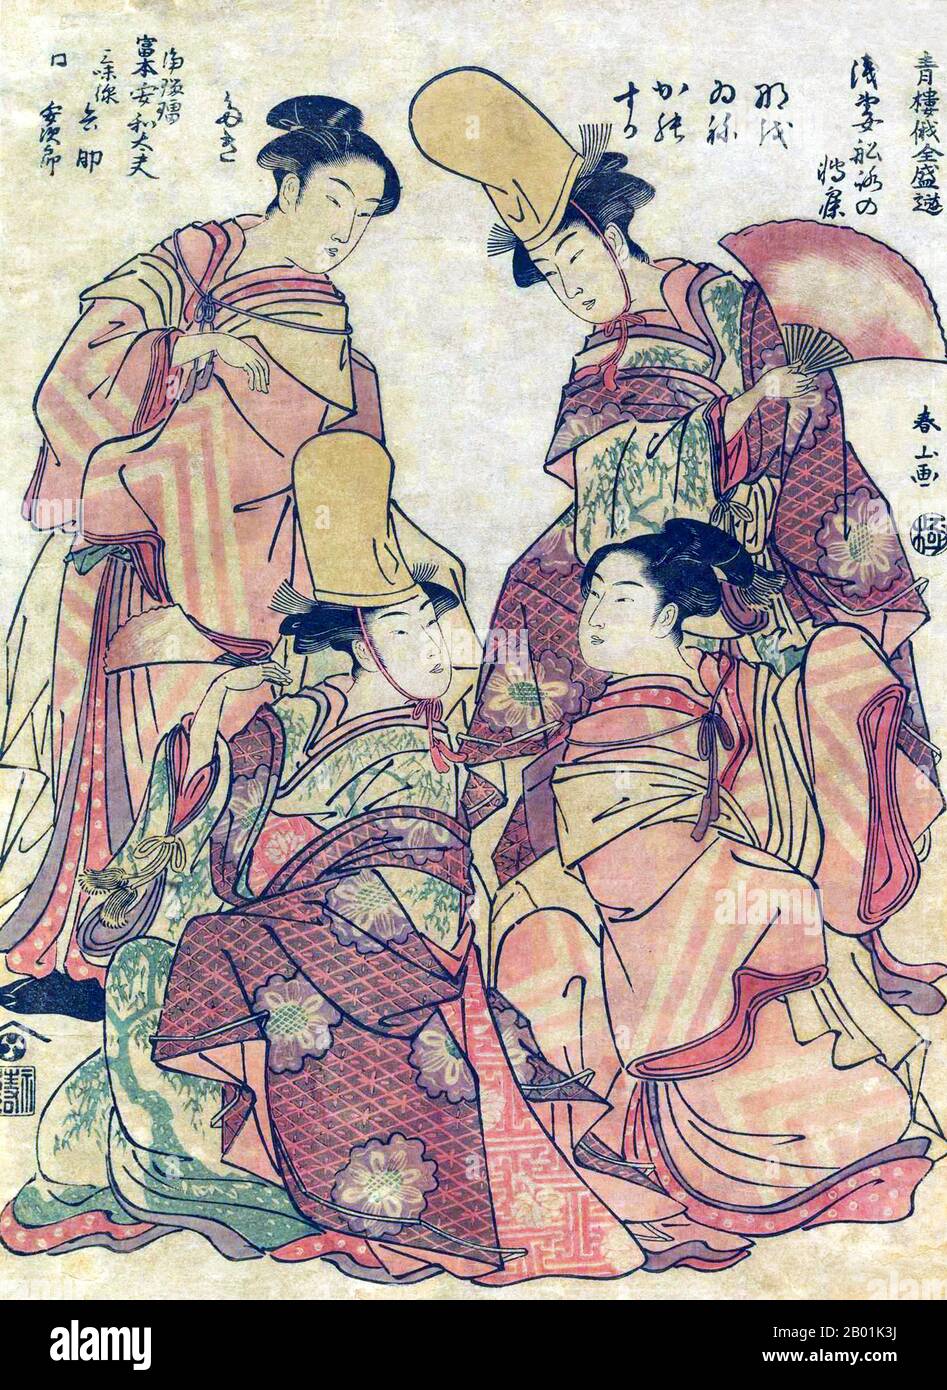 Giappone: Ragazze in abito da ballo. Ukiyo-e Woodblock print della serie 'Popular Entertainment at the Niwaka Festival' ('Seiro Niwaka Zensei Asobi') di Katsukawa Shunsho (1726 - 19 gennaio 1792), c. 1790. Katsukawa Shunshō è stato un pittore e incisore giapponese nello stile ukiyo-e, e l'artista principale della scuola Katsukawa. Shunshō studiò sotto Miyagawa Shunsui, figlio e studente di Miyagawa Chōshun, entrambi artisti ukiyo-e altrettanto famosi e di talento. Shunshō è noto soprattutto per aver introdotto una nuova forma di yakusha-e, stampe raffiguranti attori Kabuki. Foto Stock